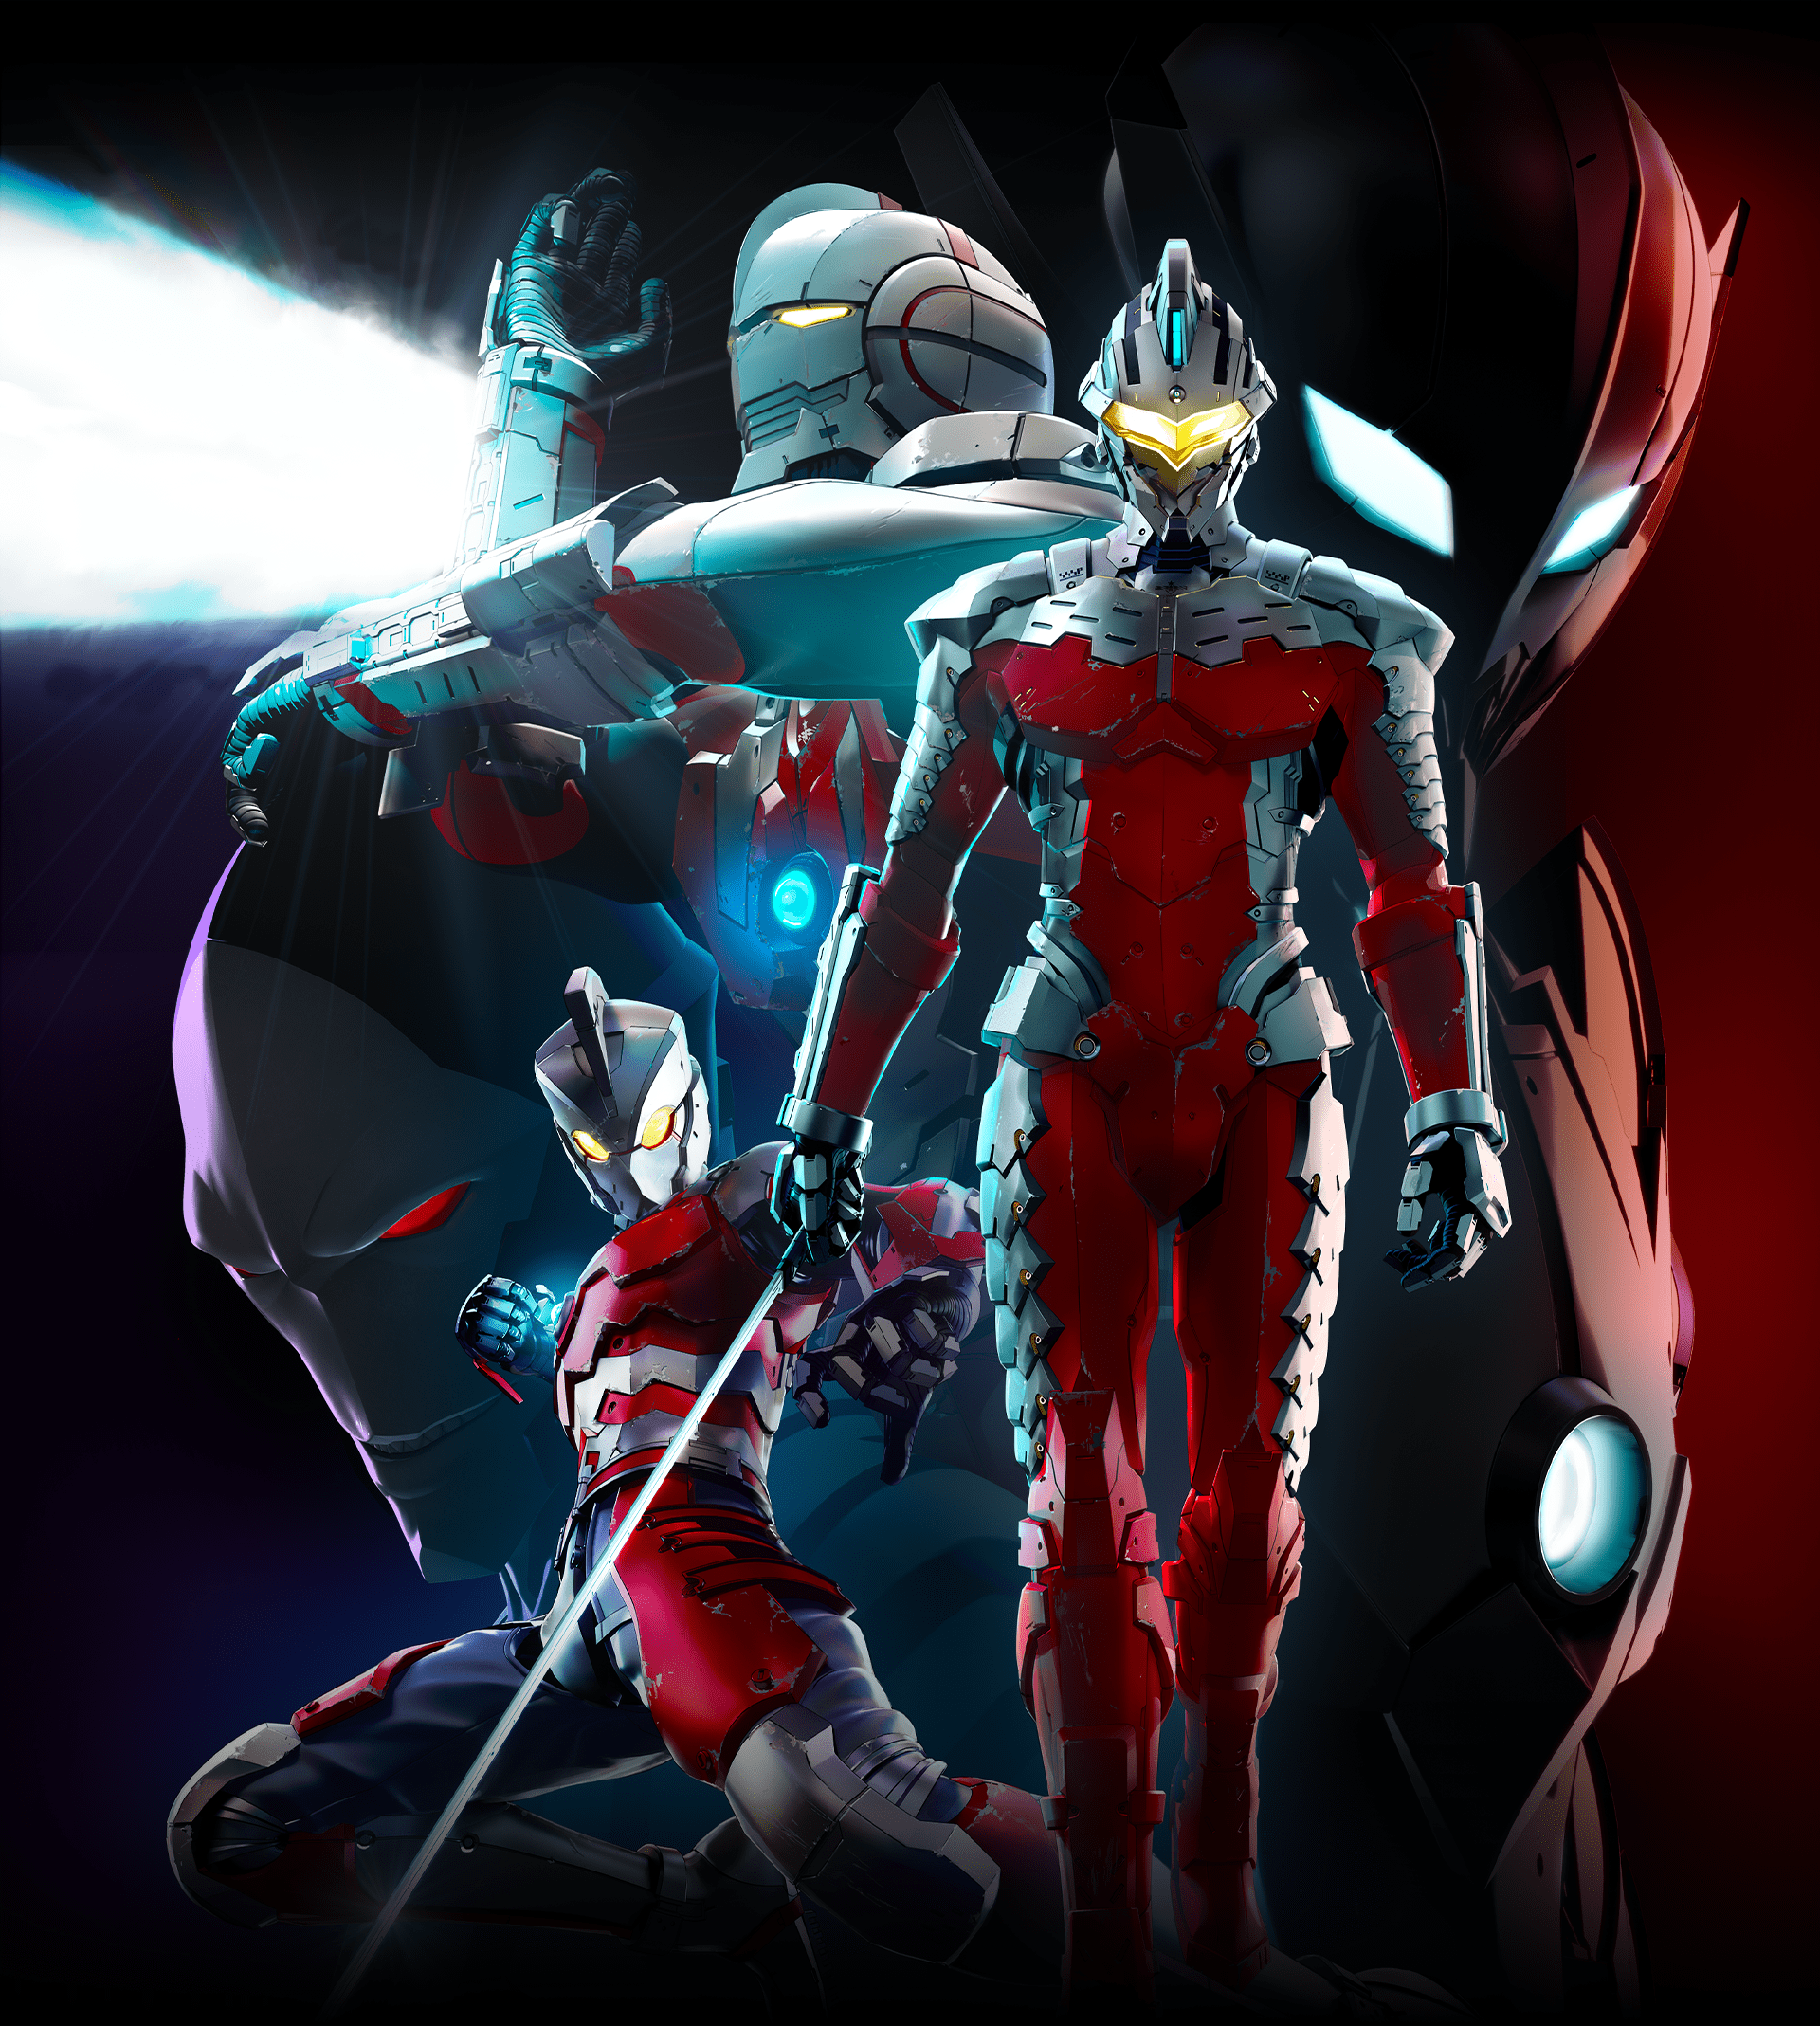 Crunchyroll Ultraman Season 2 Slated For Worldwide Premiere In 2022